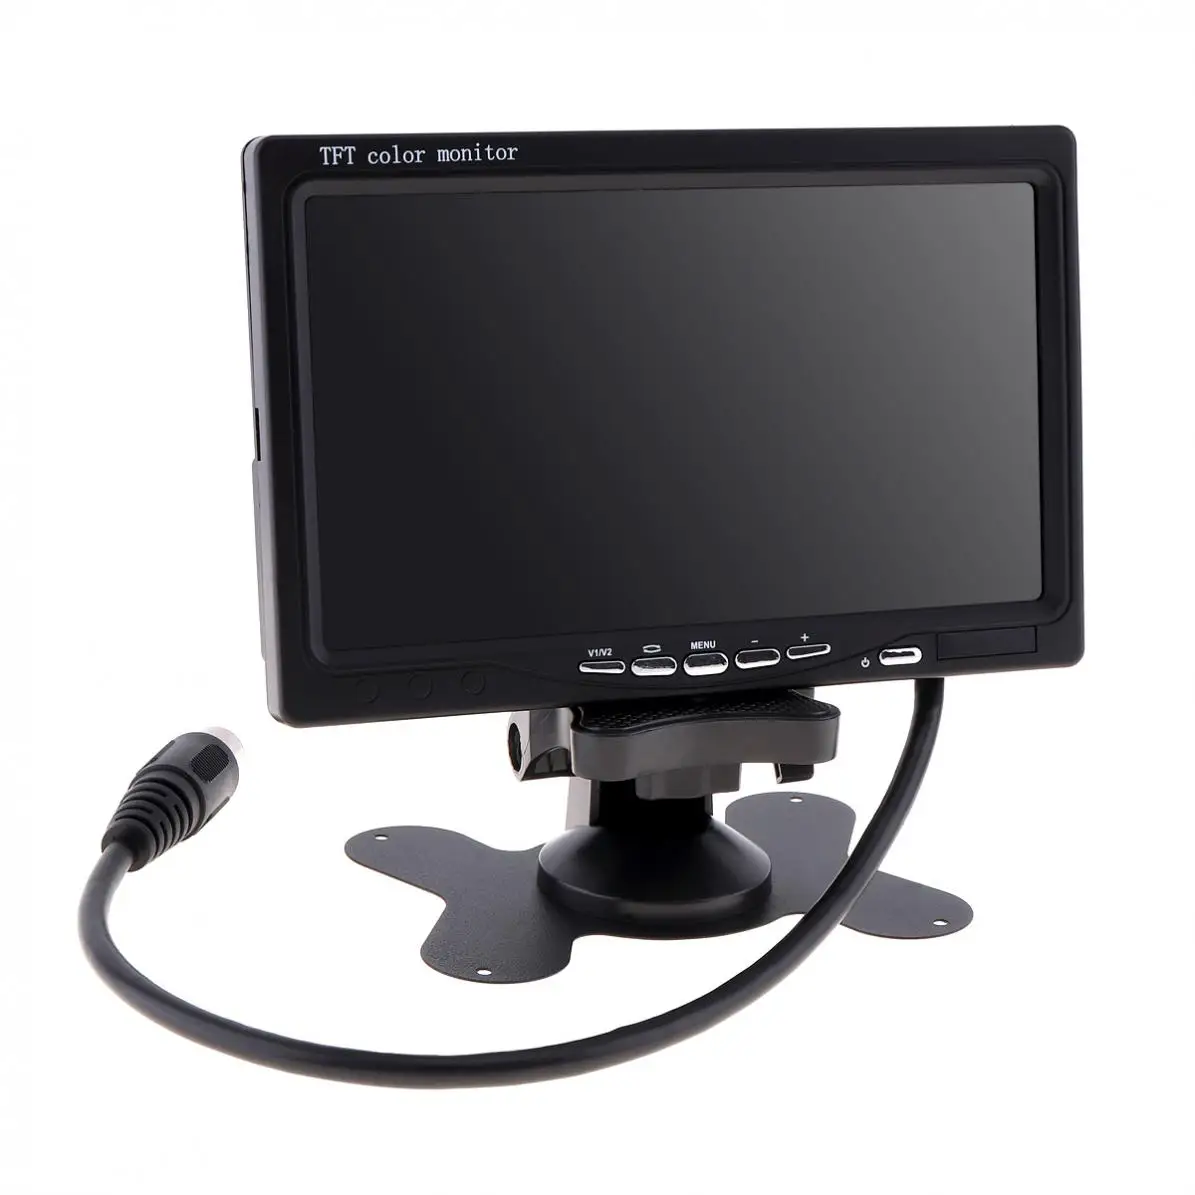 7 дюймов 12 В TFT lcd Автомобильный подголовник монитор для камеры заднего вида/DVD поддержка gps/4 способа видео вход